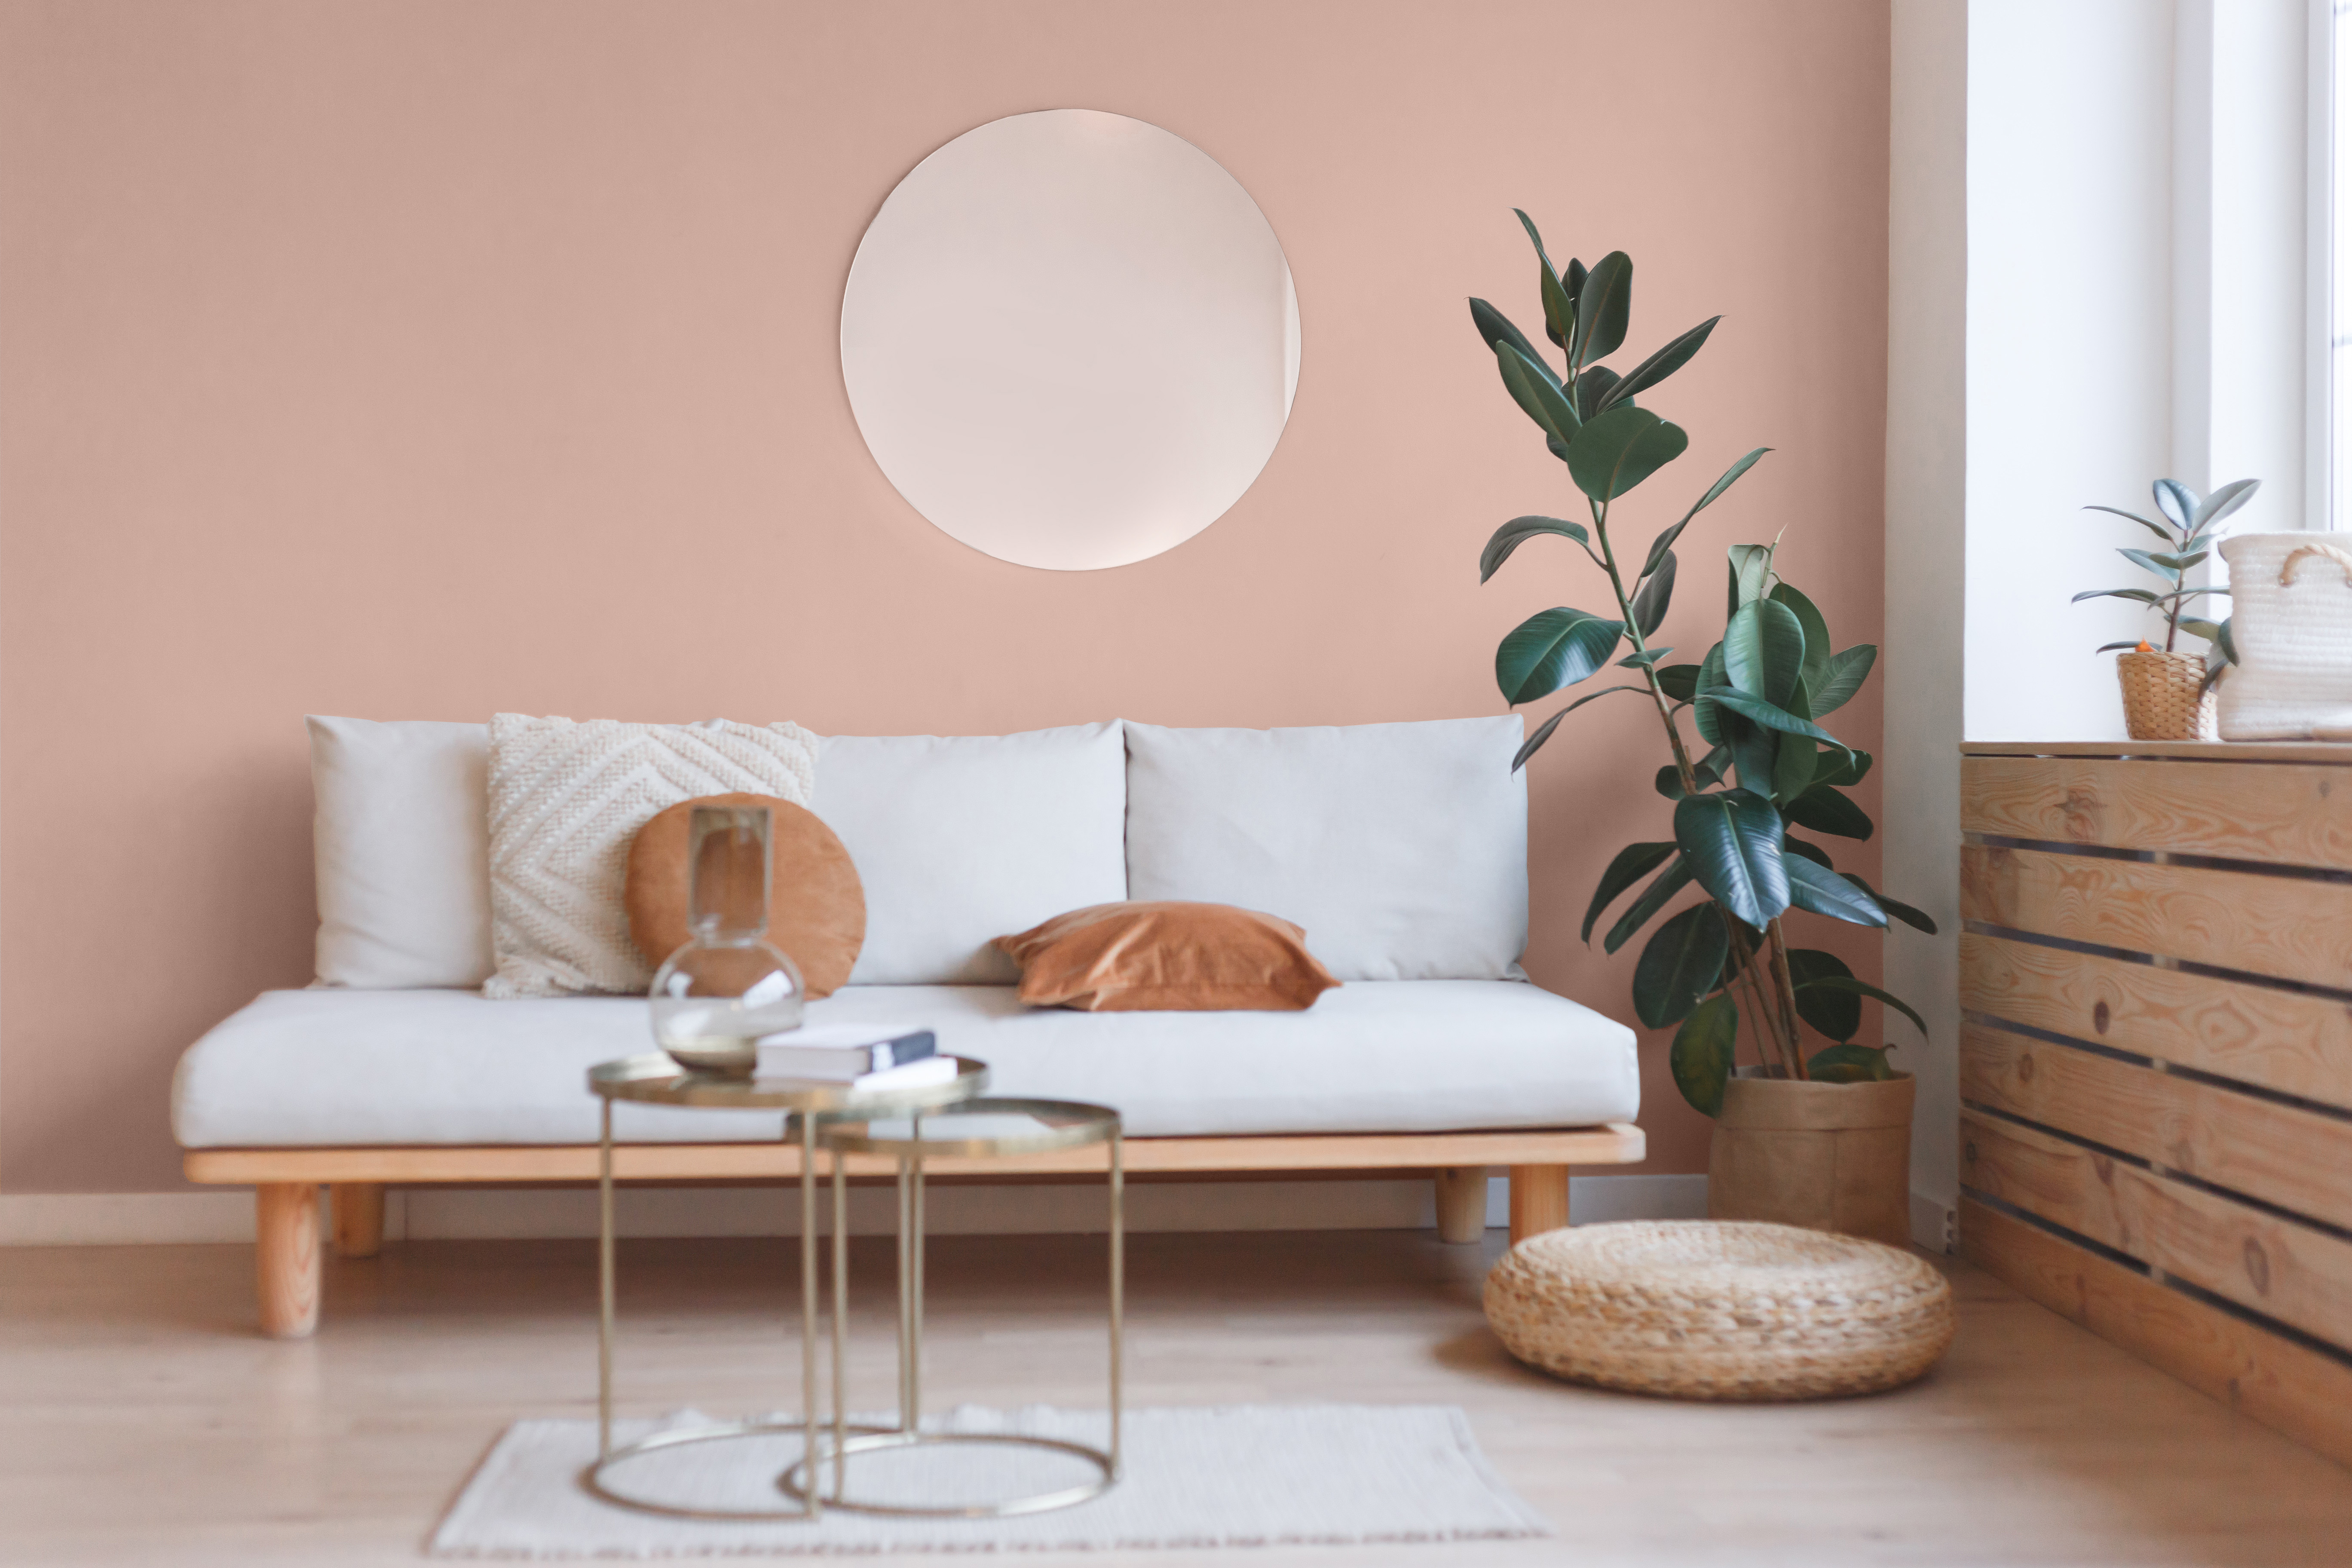 Un intérieur de salon avec sofa, miroir et ficus. La couleur présentée sur les murs est un rose chaud et clair appelé Brique lavée au soleil.